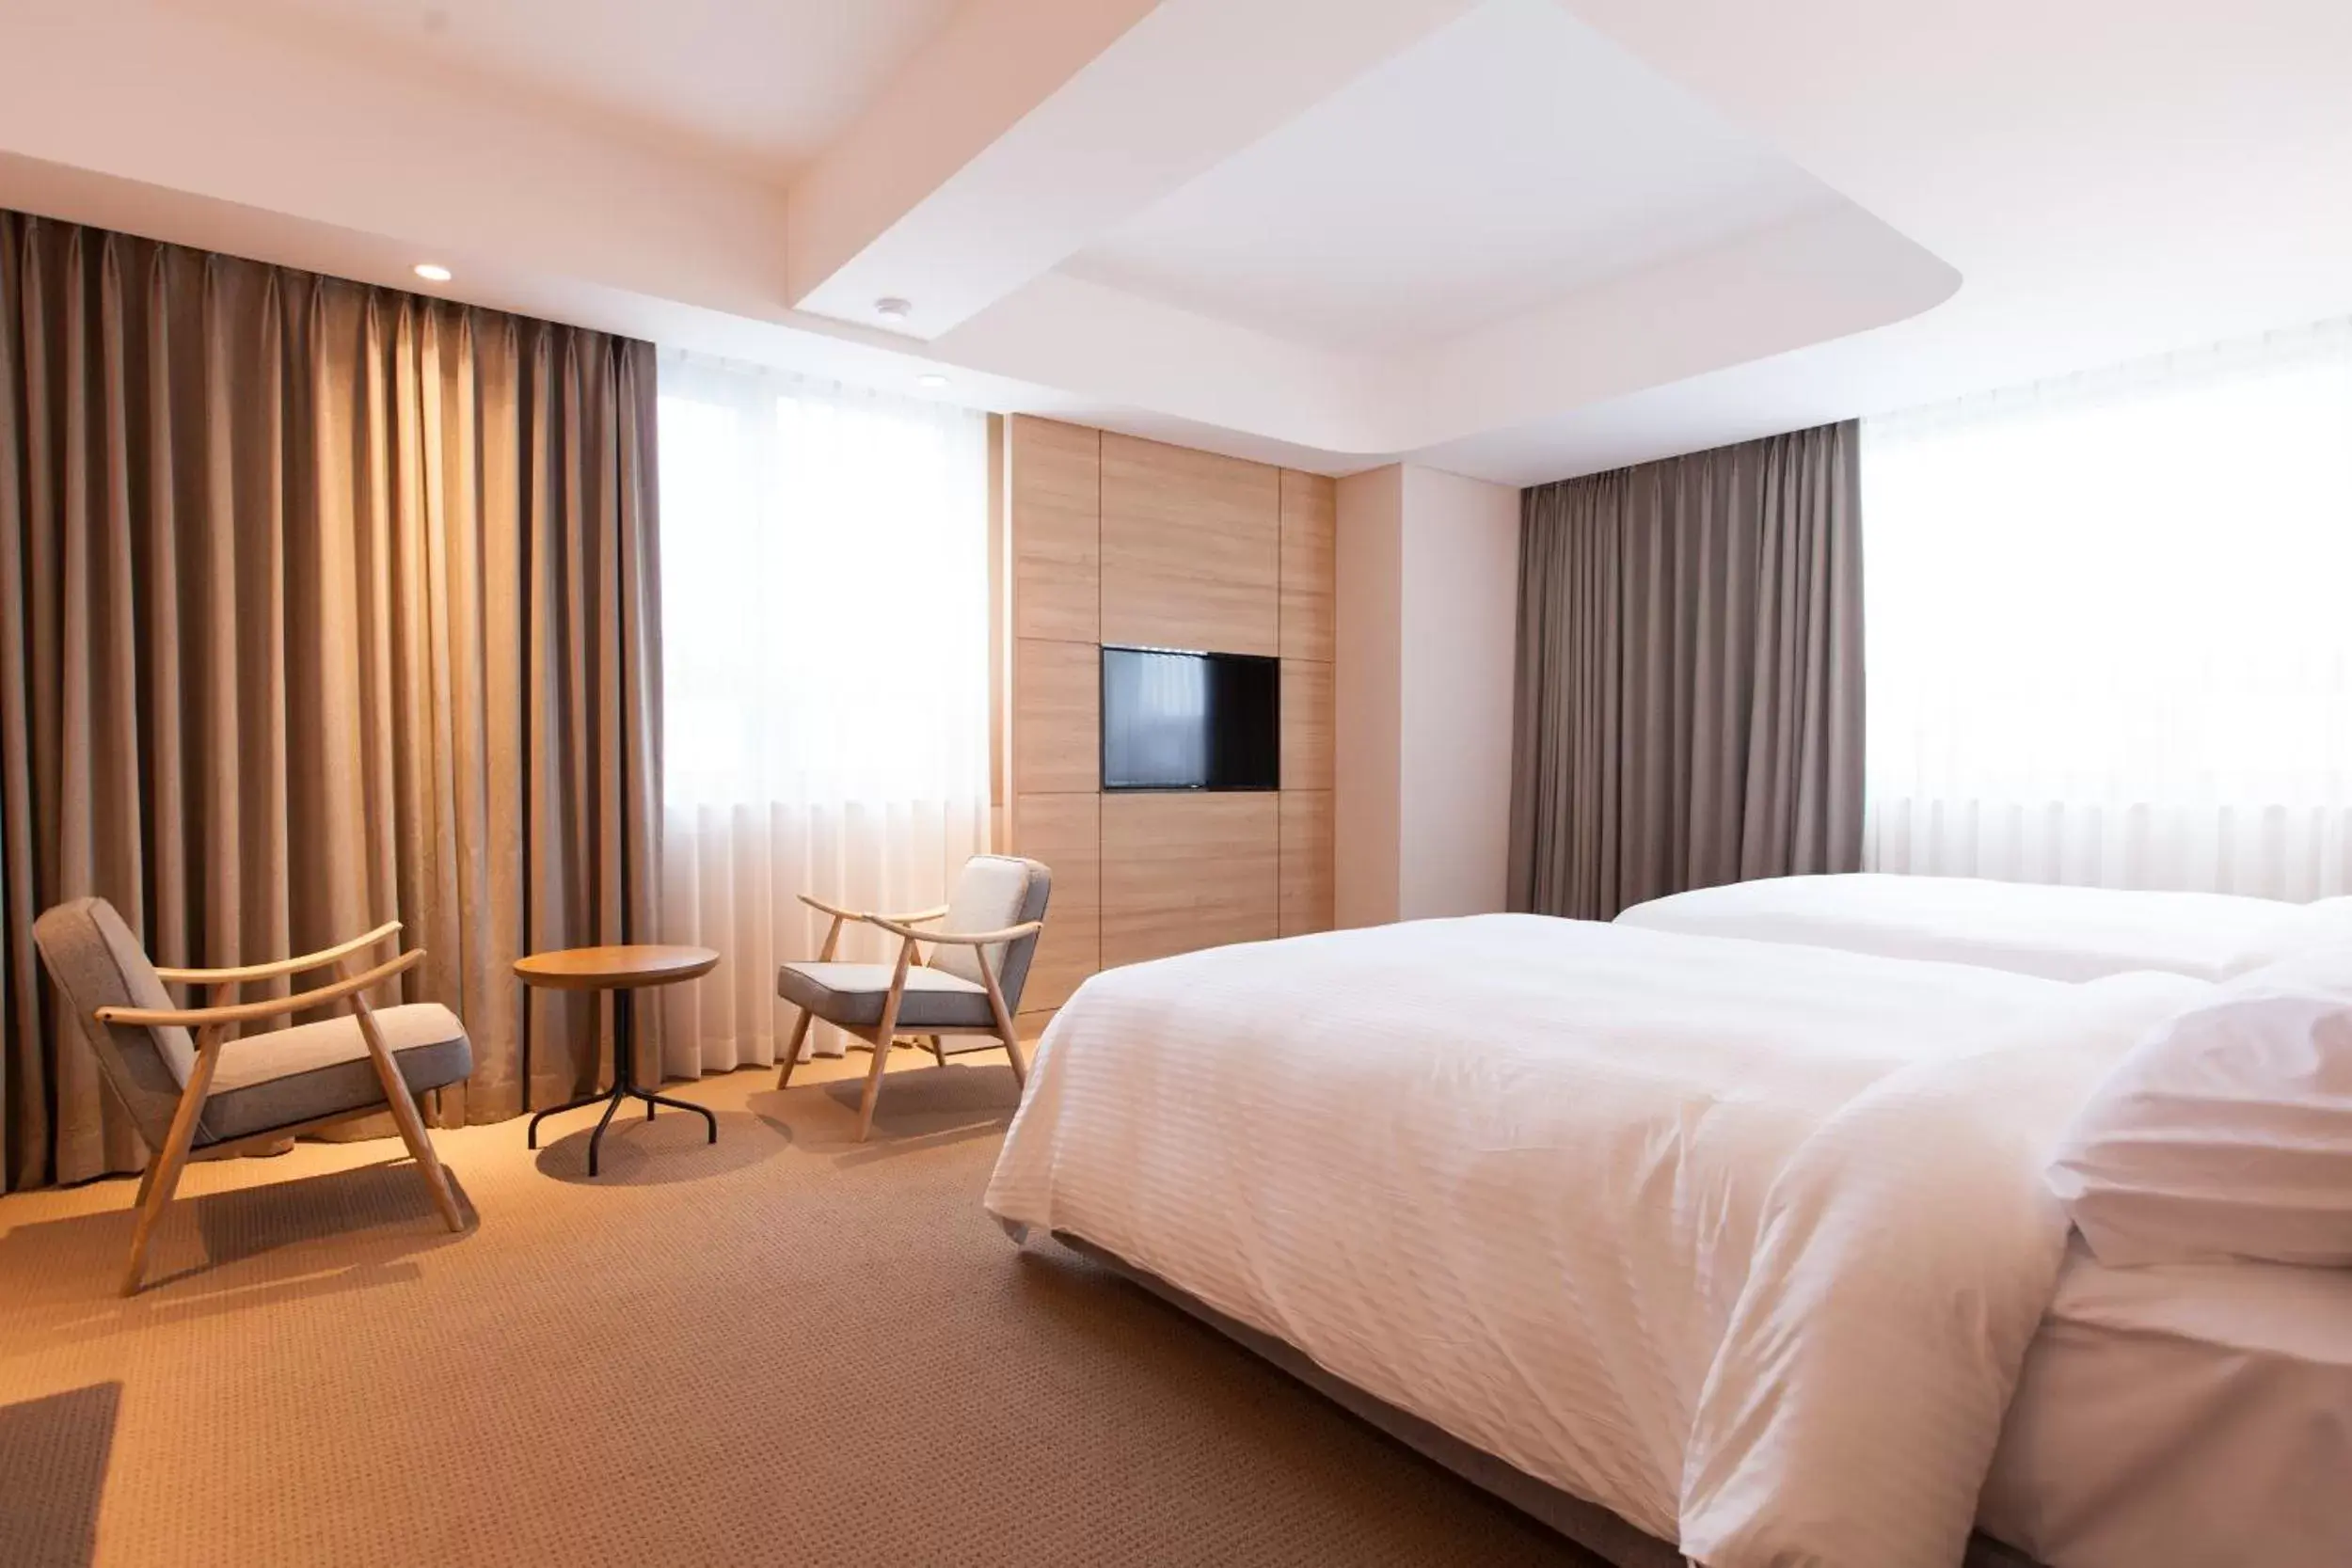 Bedroom, TV/Entertainment Center in Acube Hotel Dongdaemun